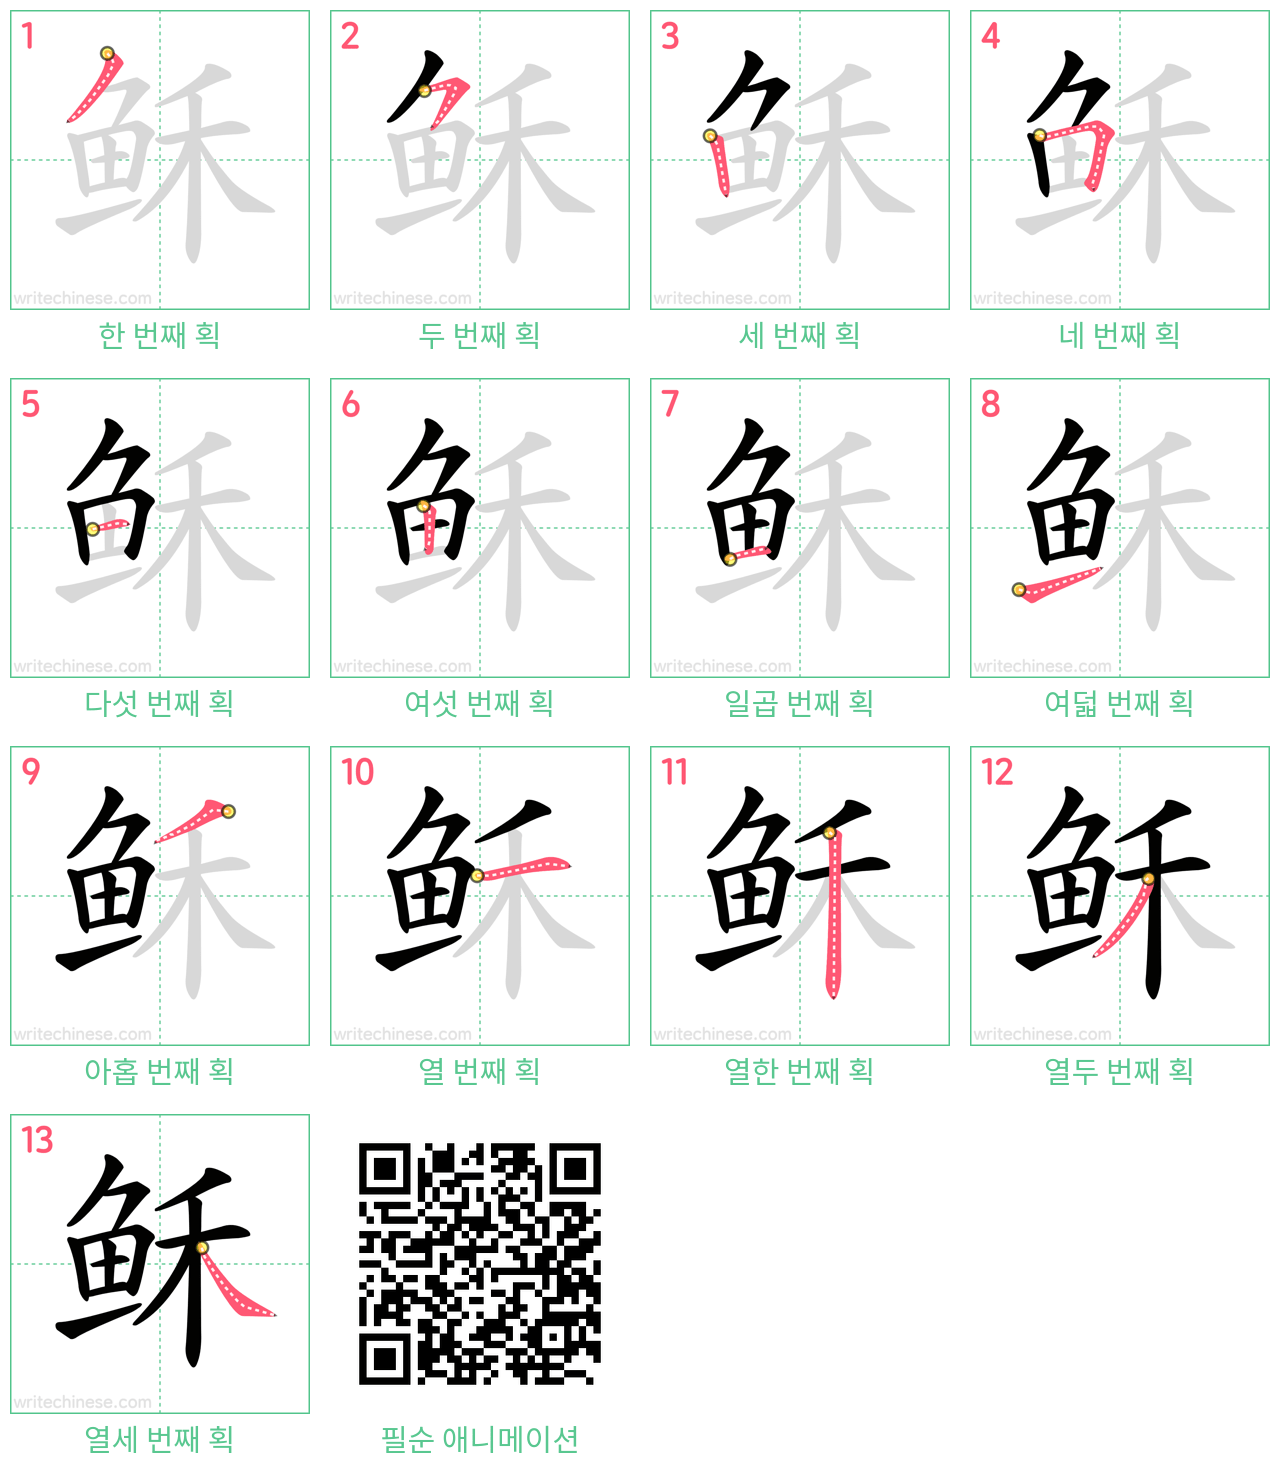 稣 step-by-step stroke order diagrams